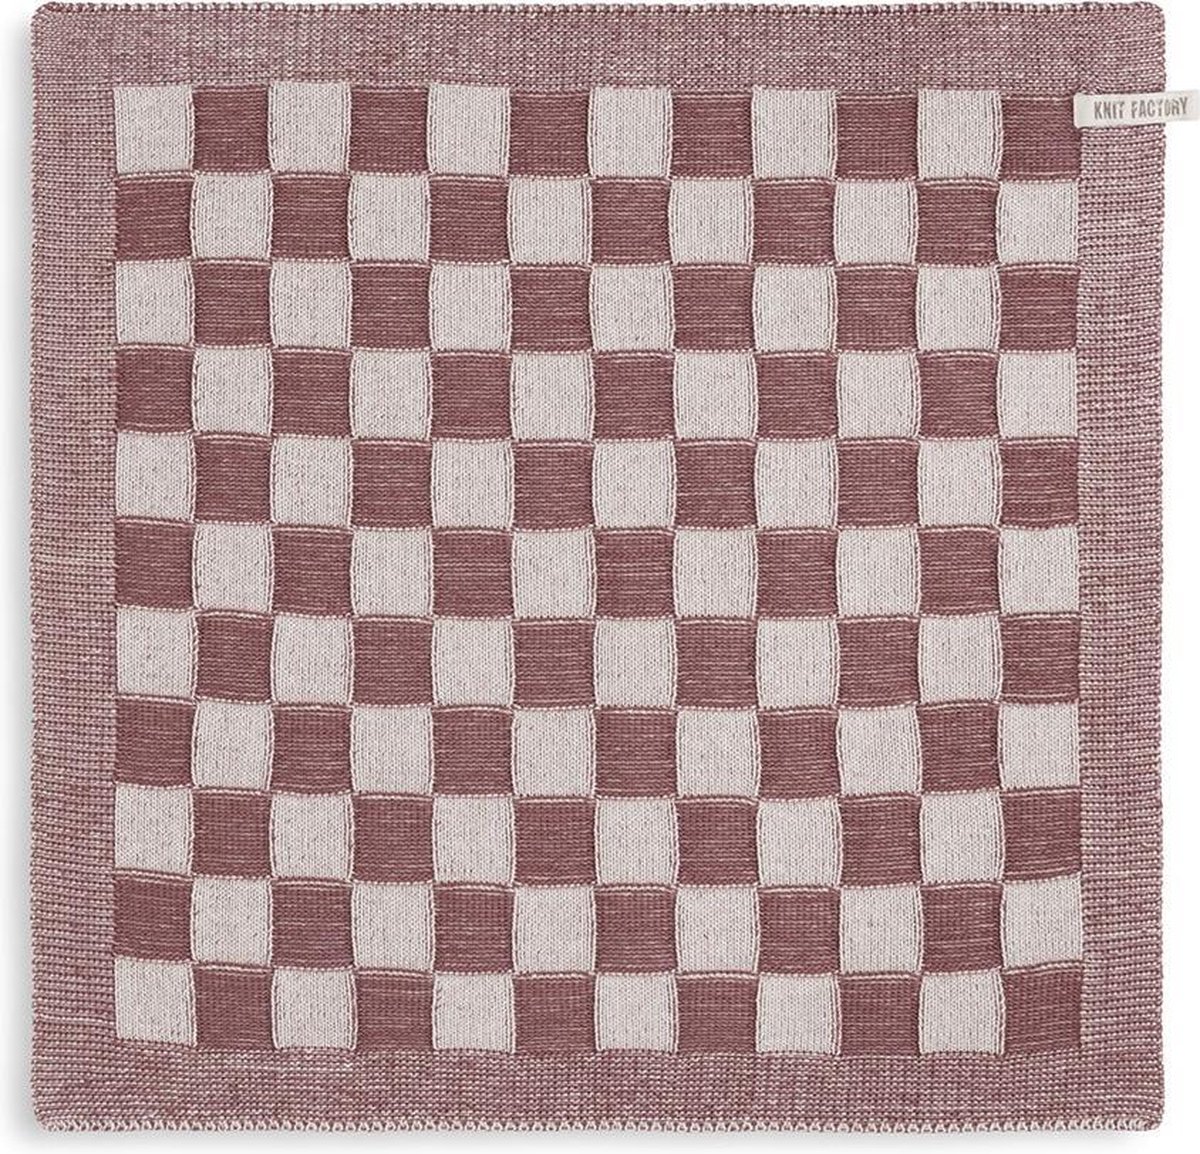 Knit Factory Gebreide Keukendoek - Keukenhanddoek Block - Geblokt motief - Handdoek - Vaatdoek - Keuken doek - Ecru/Stone Red - Traditionele look - 50x50 cm